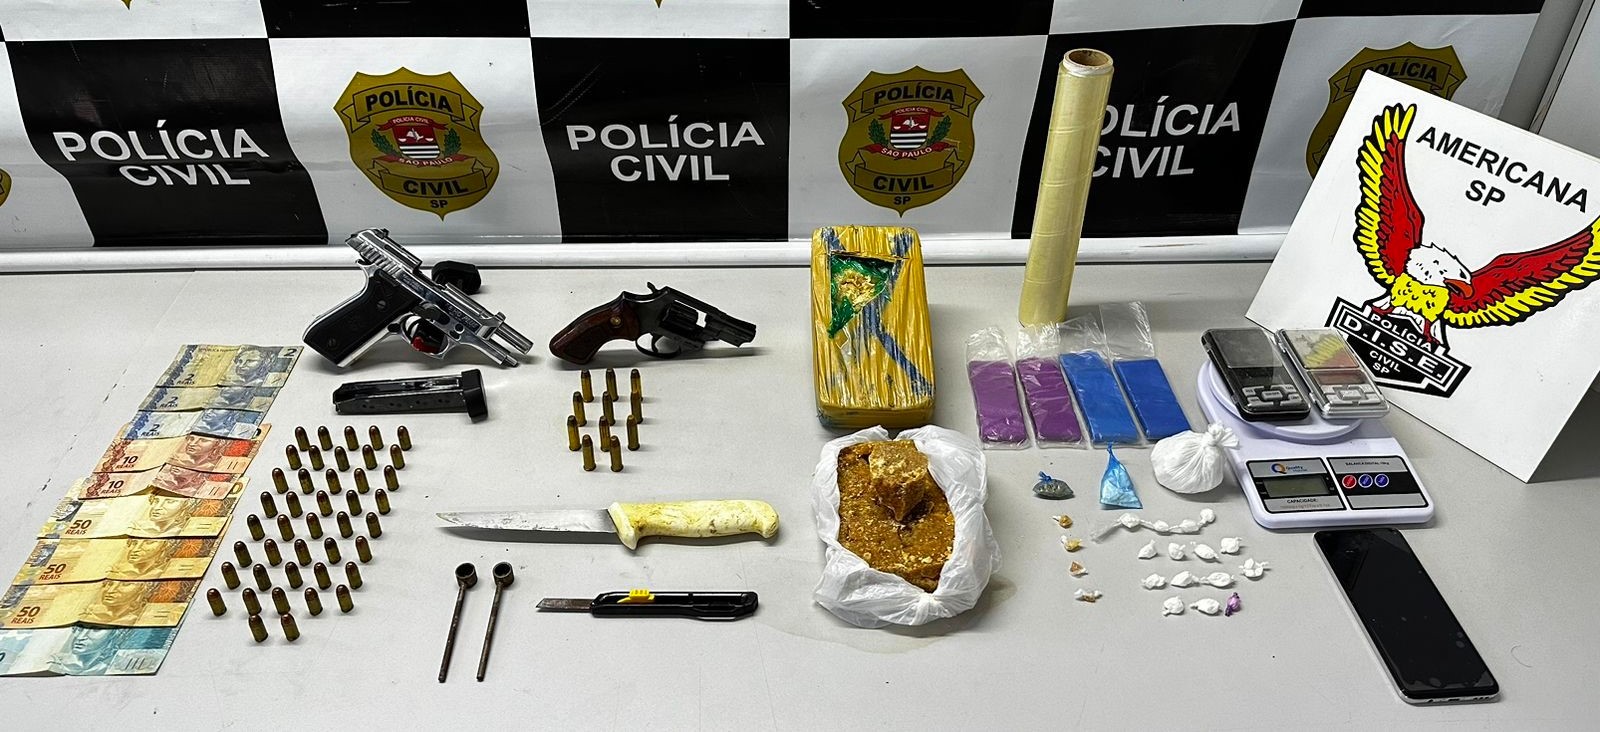 Mecânico é preso por armazenar drogas, armas e munições no Frezzarin